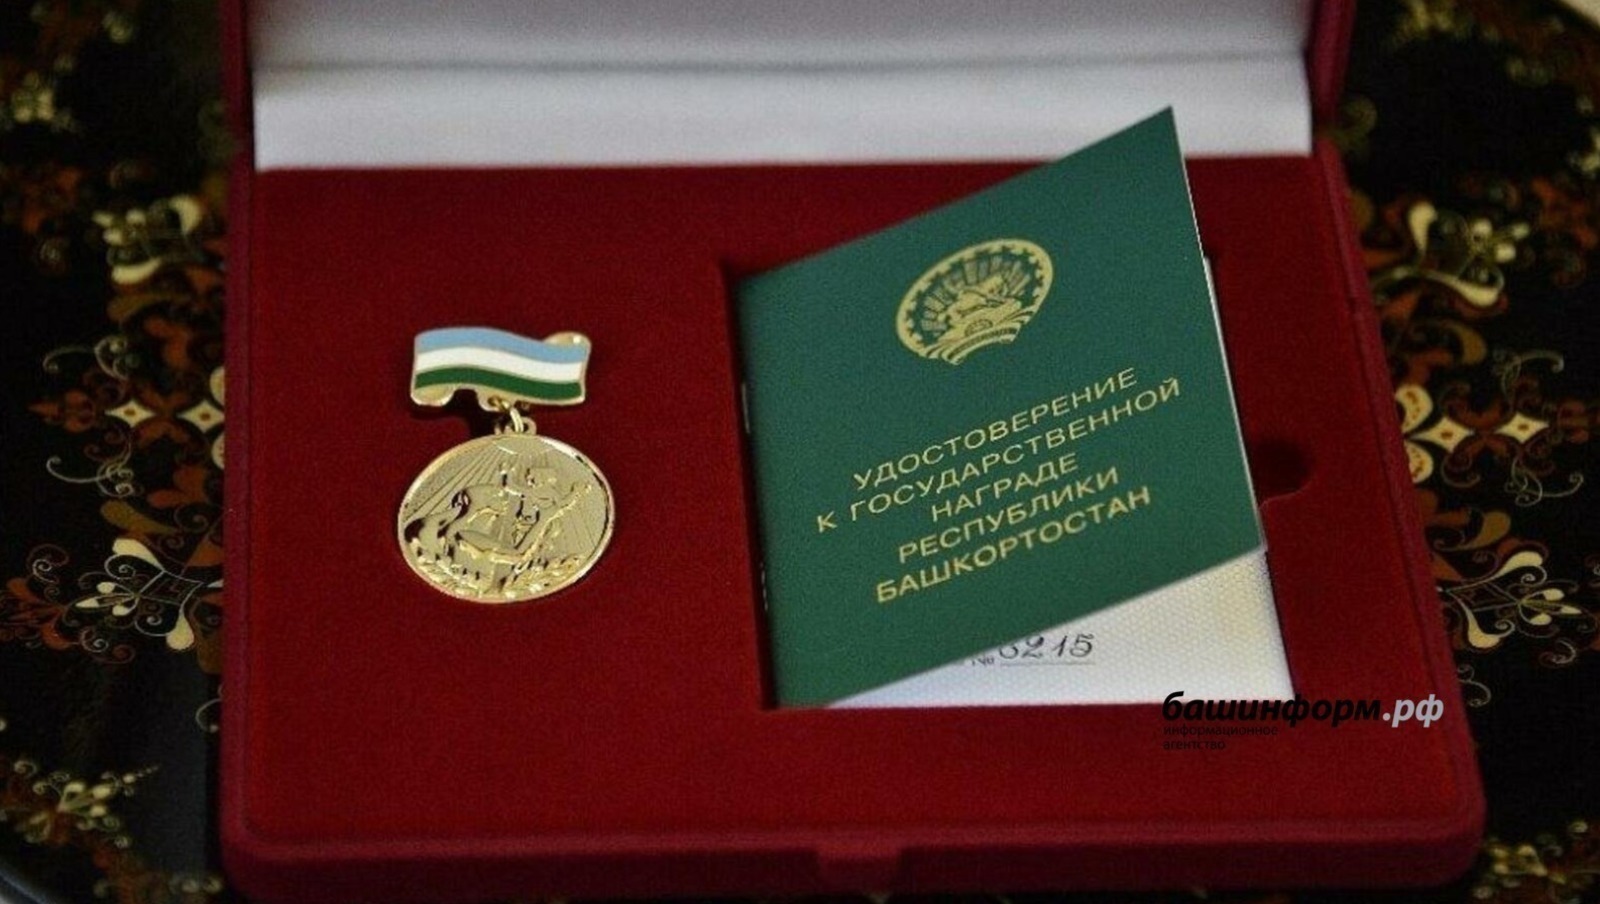 Нумай ачаллă 55 аннене «Анне мухтавĕ» медальпе чыслĕç